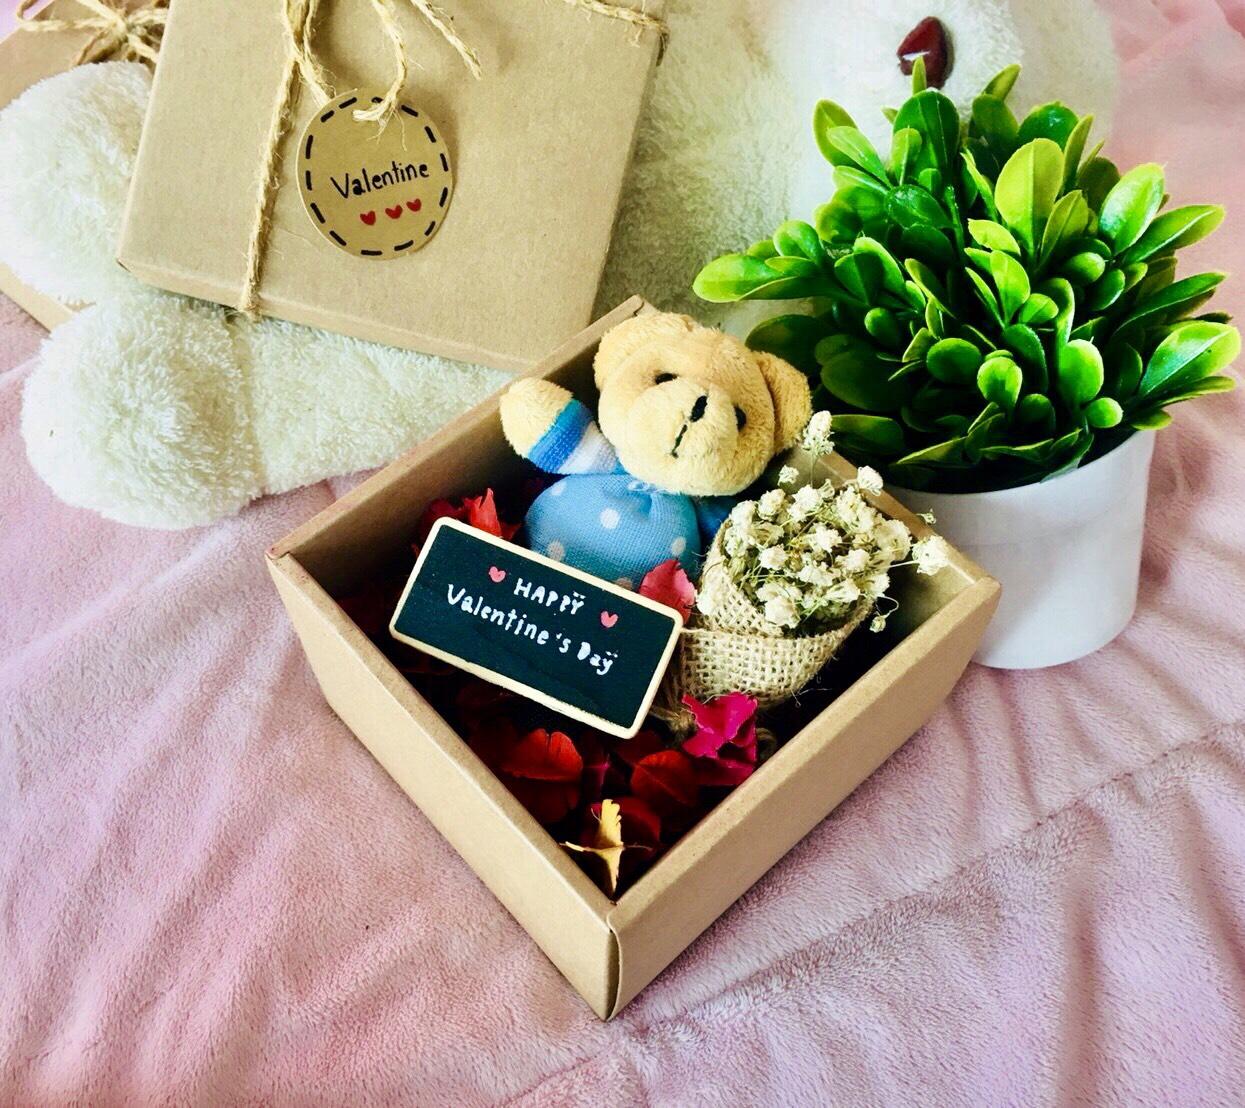 กล่องของขวัญ แฮนเมด ดอกไม้หอม+ตุ๊กตา (1ชุด)